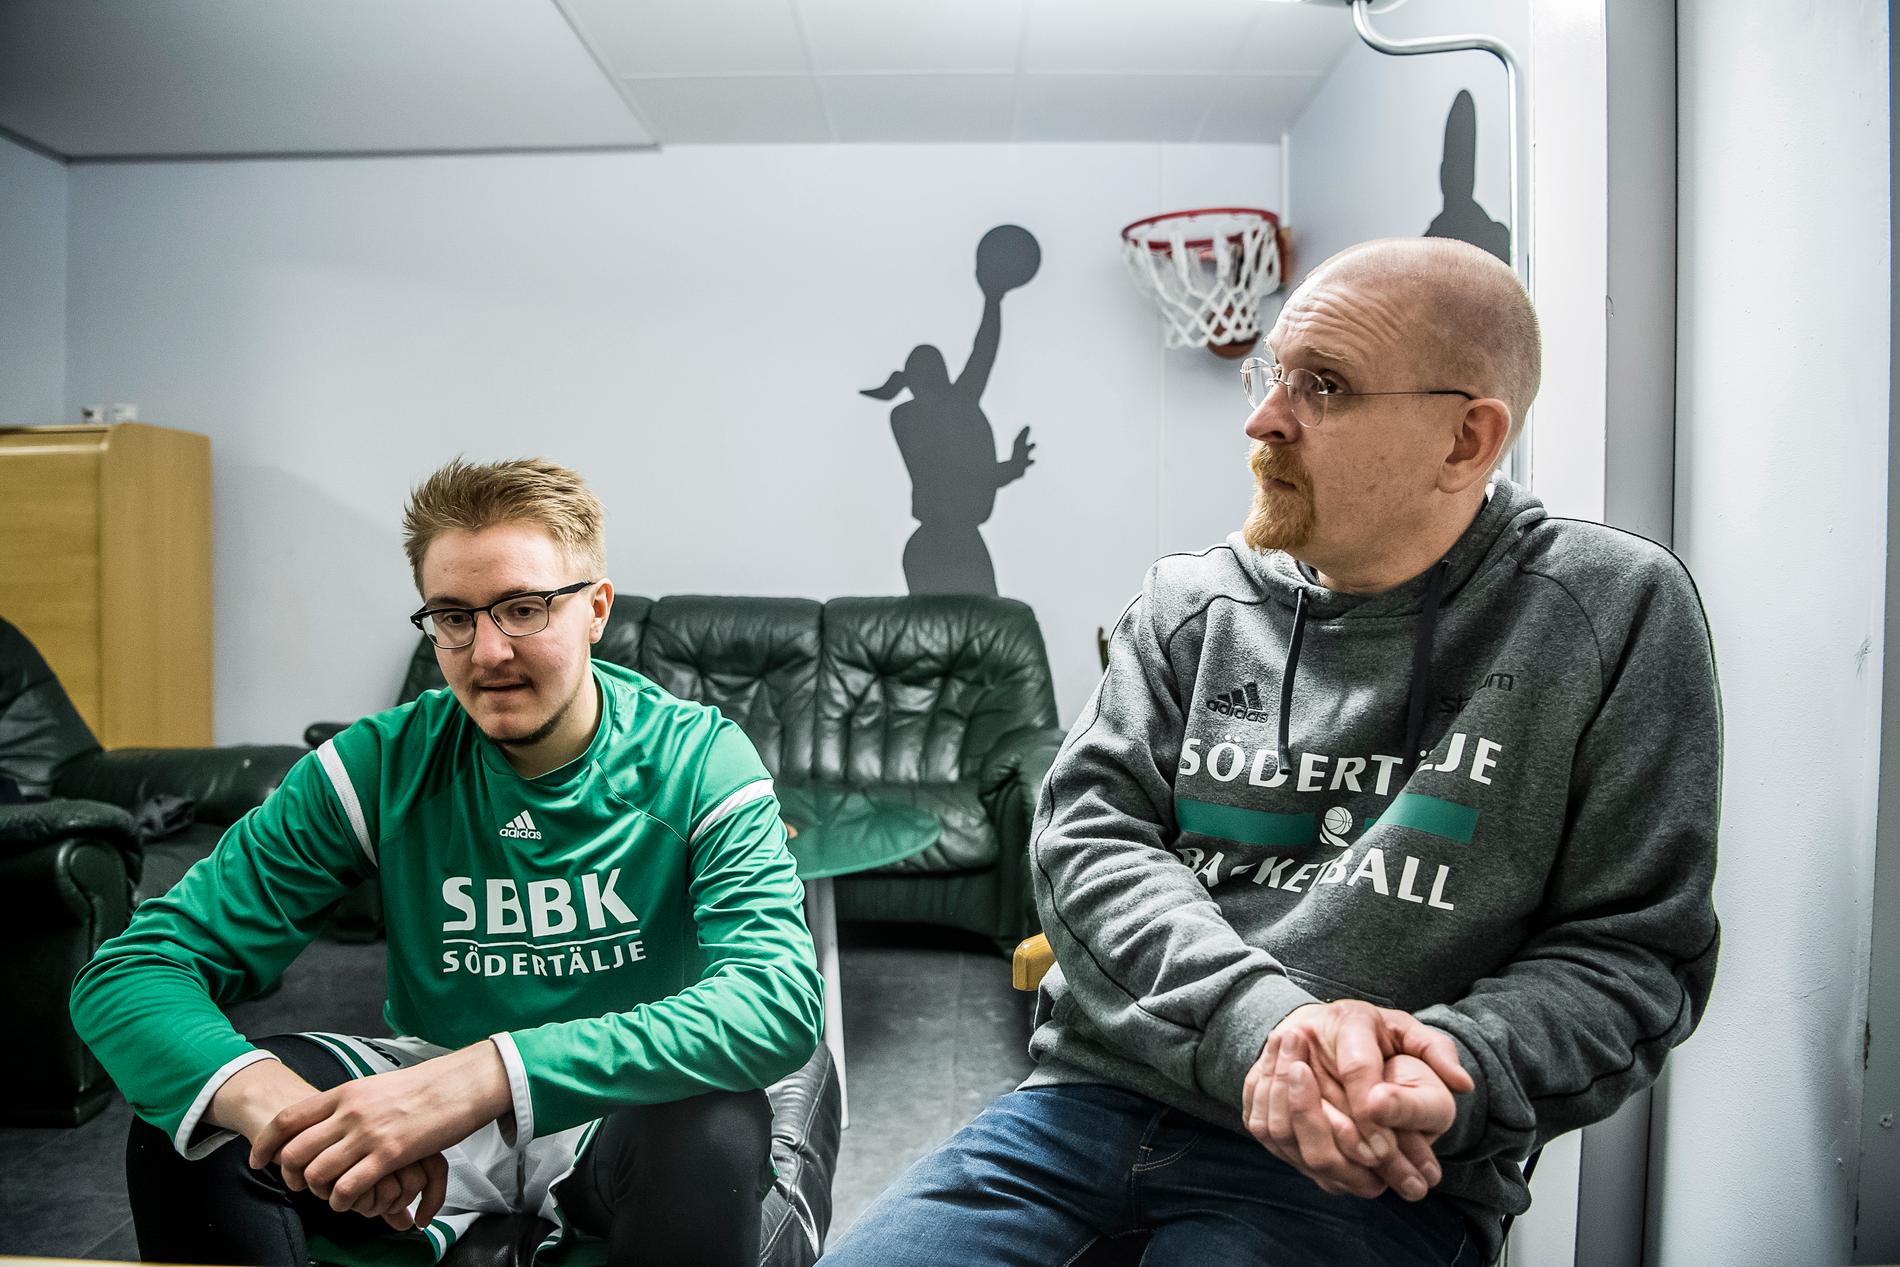 Södertälje Basketbollklubbs huvudtränare Joakim Brunnström med Noel Filén-Hammarström efter söndagens match.